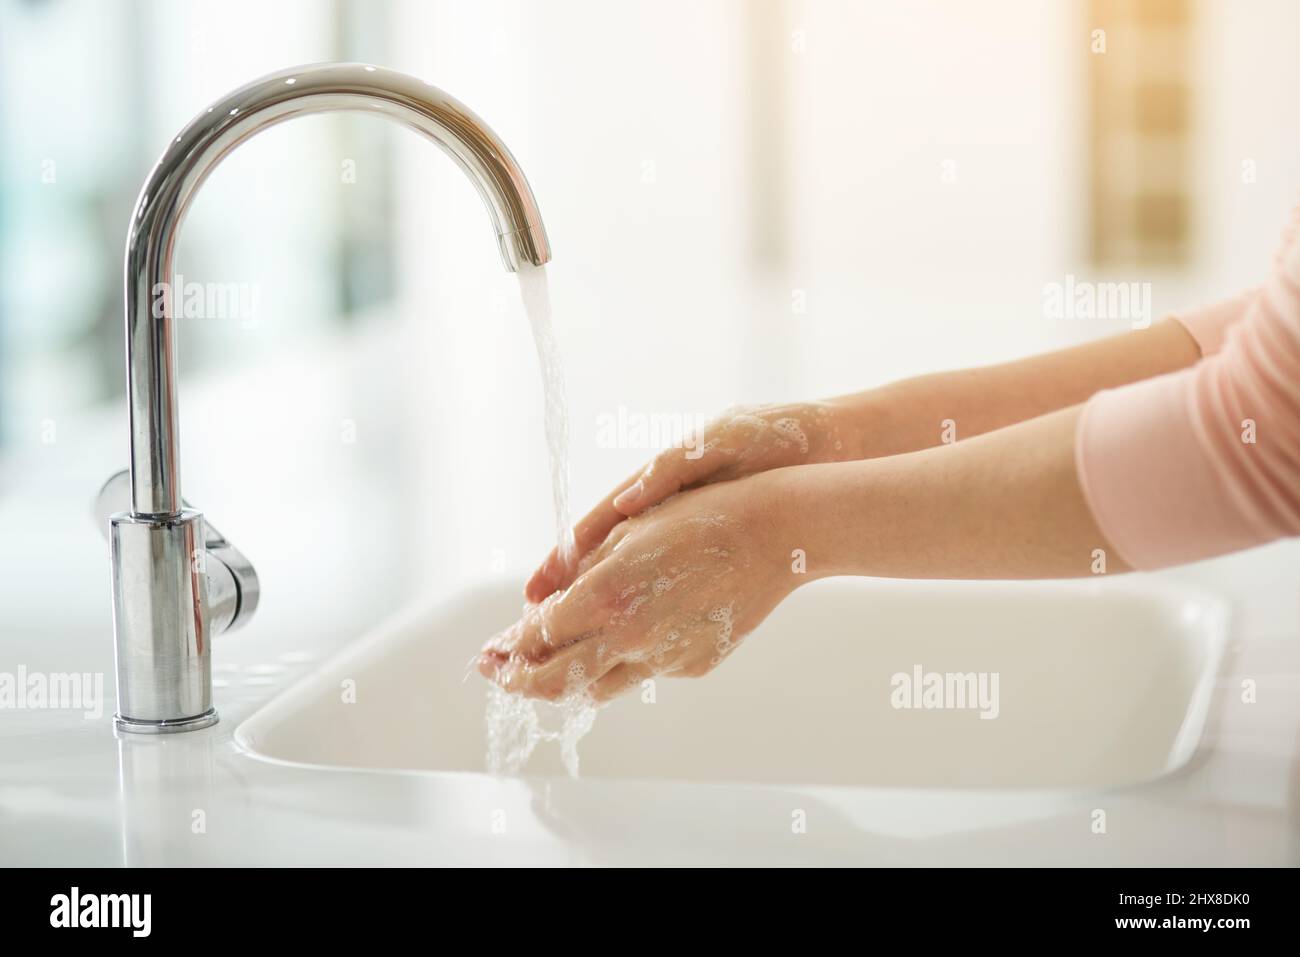 Halten Sie Ihre Hände sauber. Schuss der Hände, die mit fließendem Wasser gewaschen wurden. Stockfoto